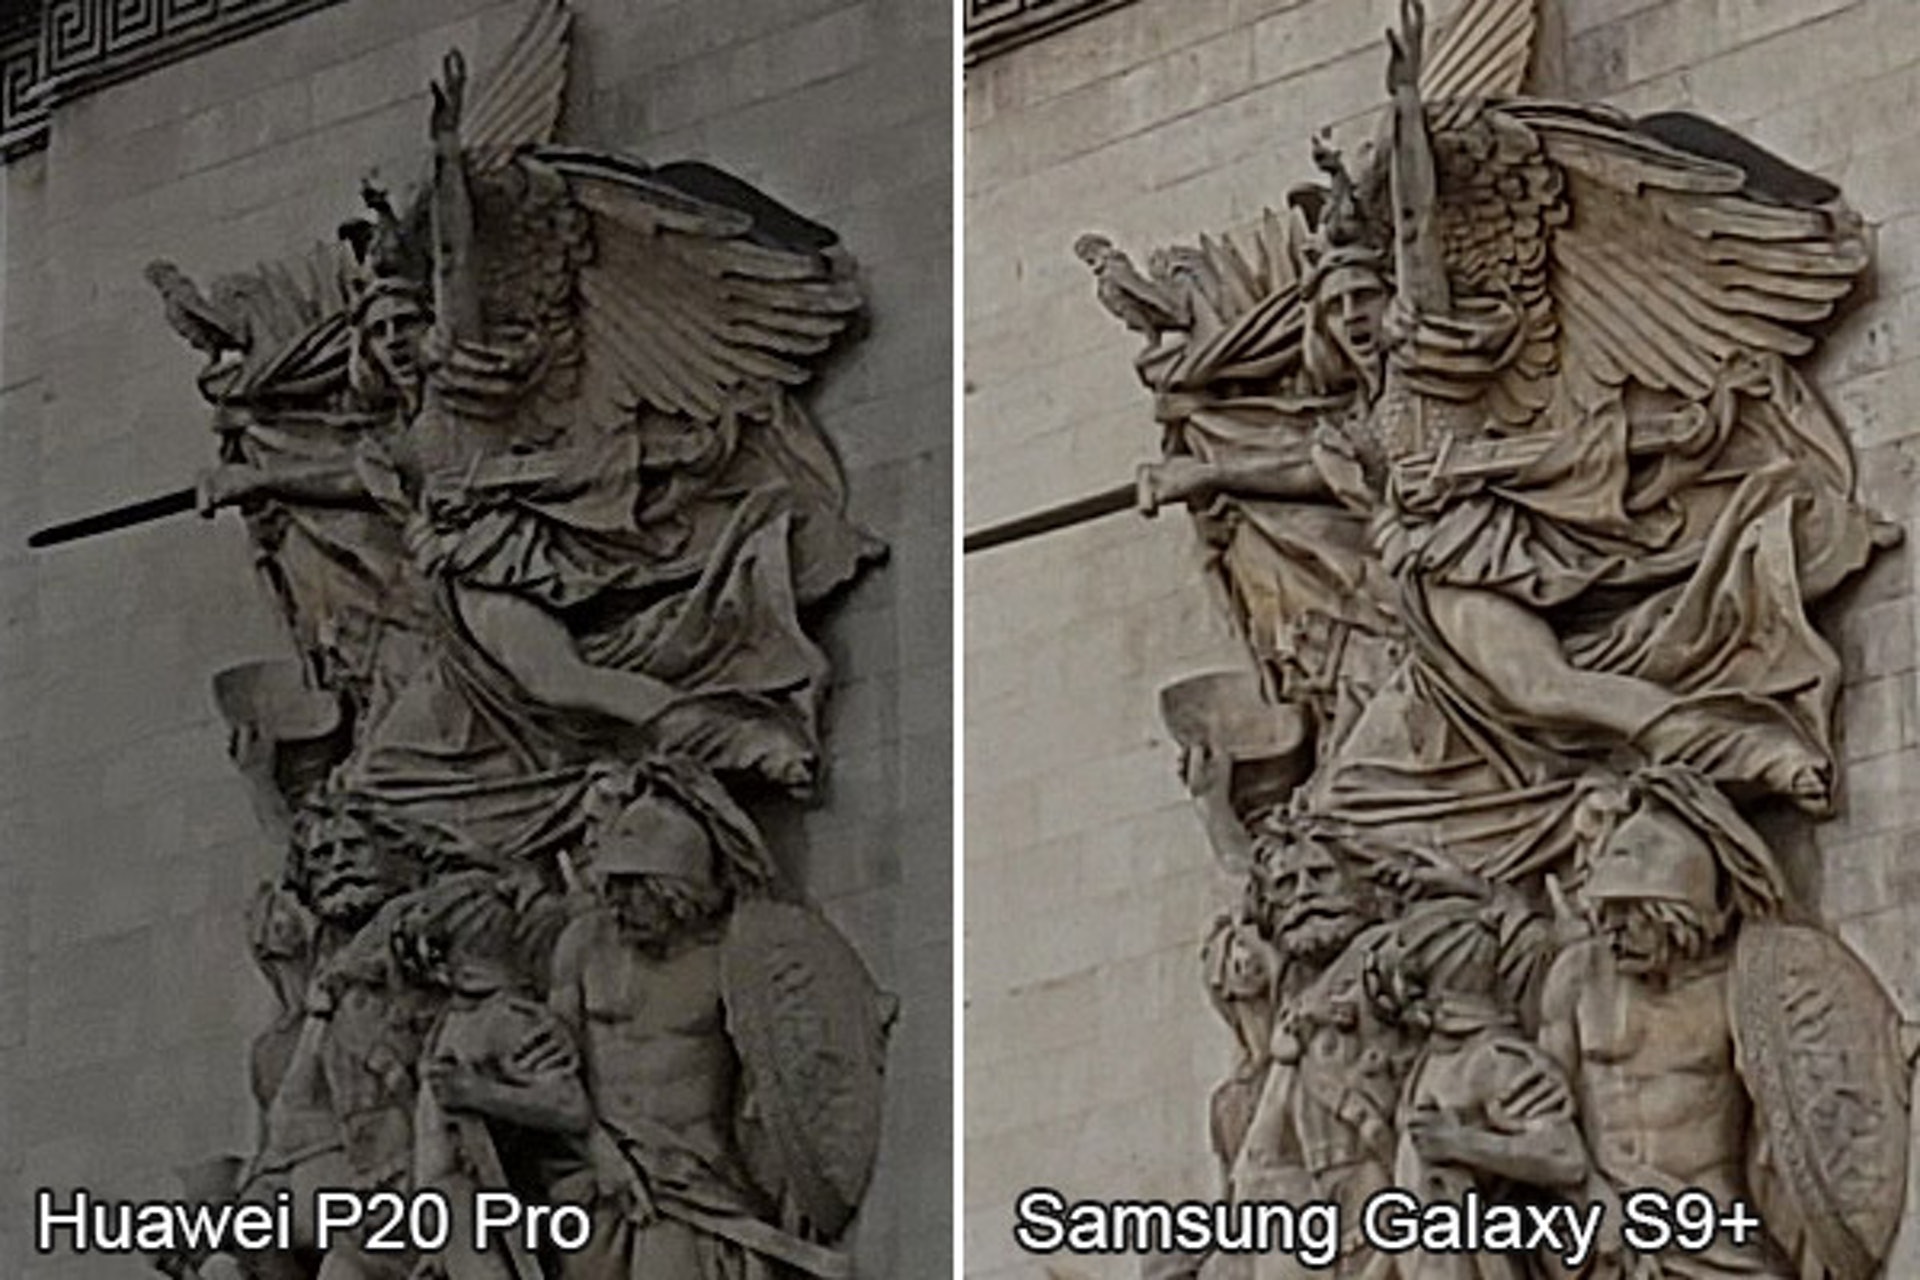 100％ 放大的话，留意雕像羽翼部份，高仿三星S9+手机 拍得的照片细节较多，对比度也较高